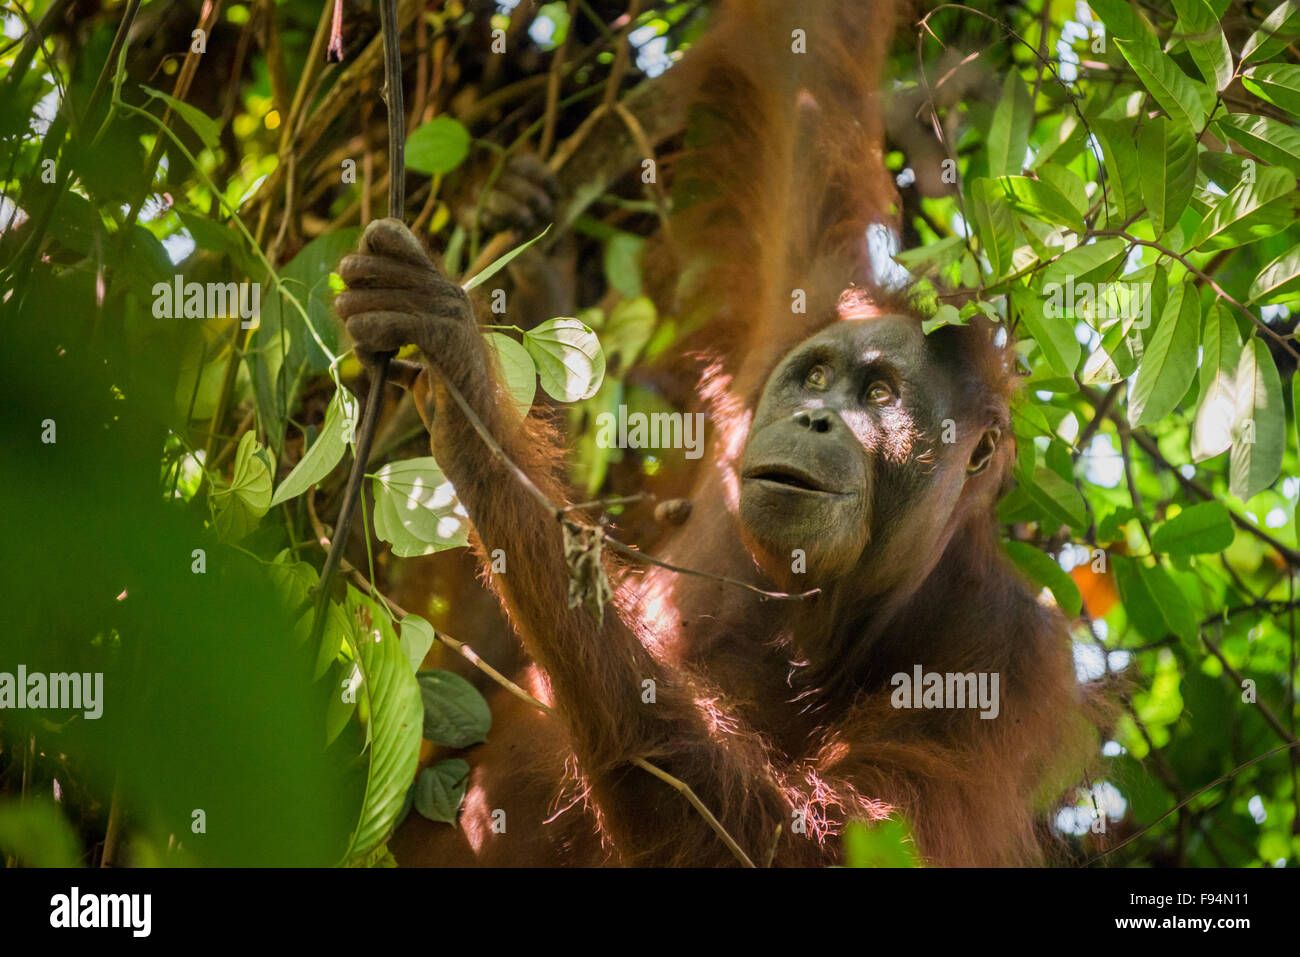 Orangután borneano noreste (Pongo pygmaeus morio). Mujeres adultas forrajeras en el Parque Nacional de Kutai, Indonesia. Foto de stock